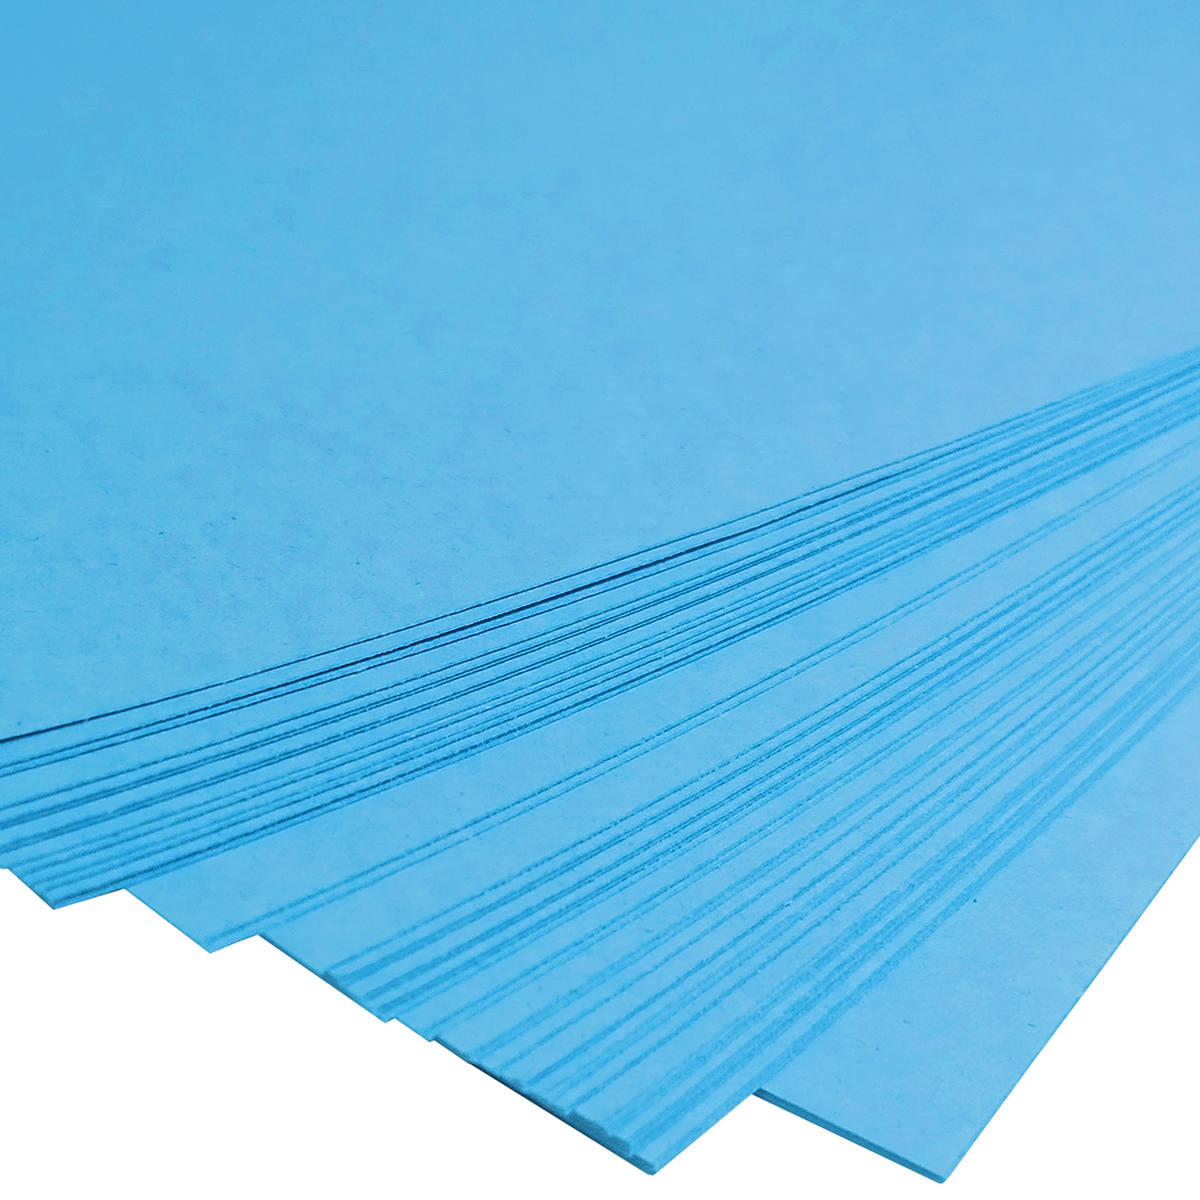 Papel Azul Opaline Diplomata Offset Liso 180g A4 Massa Colorida Tipo Ofício 60kg Pacote com 50 folhas Masterprint